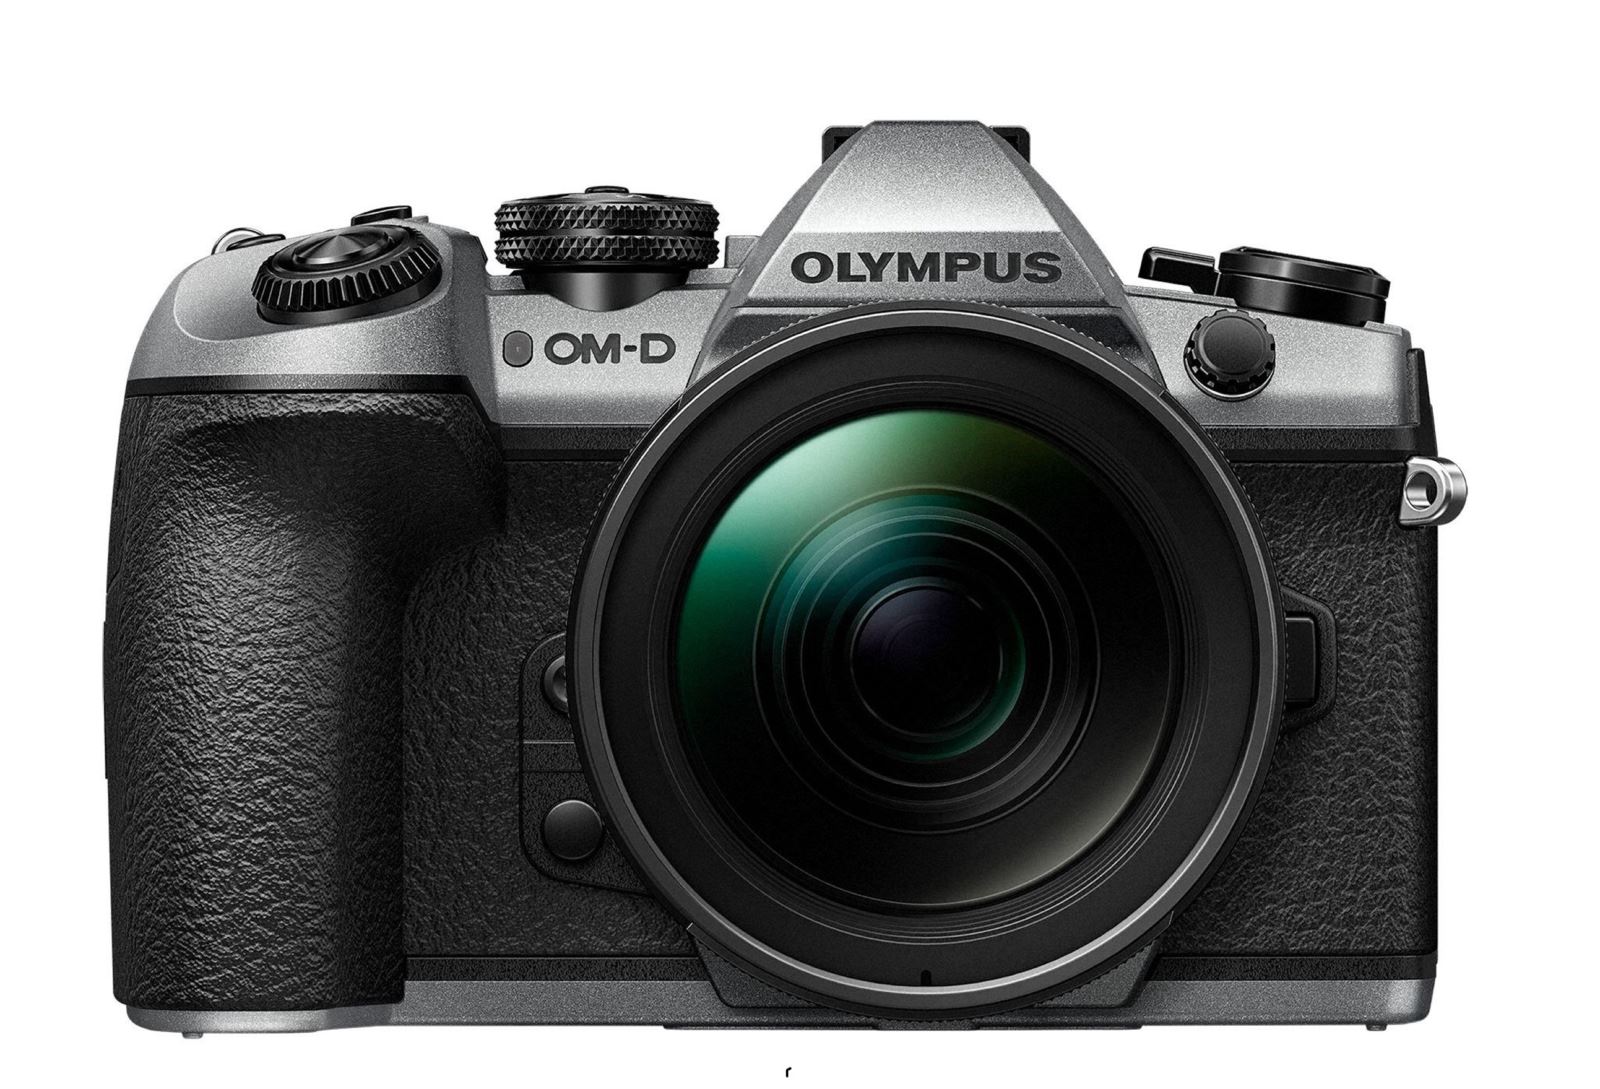 Olympus công bố máy ảnh OM-D E-M1 Mark II phiên bản giới hạn để kỷ niệm 100 năm thành lập